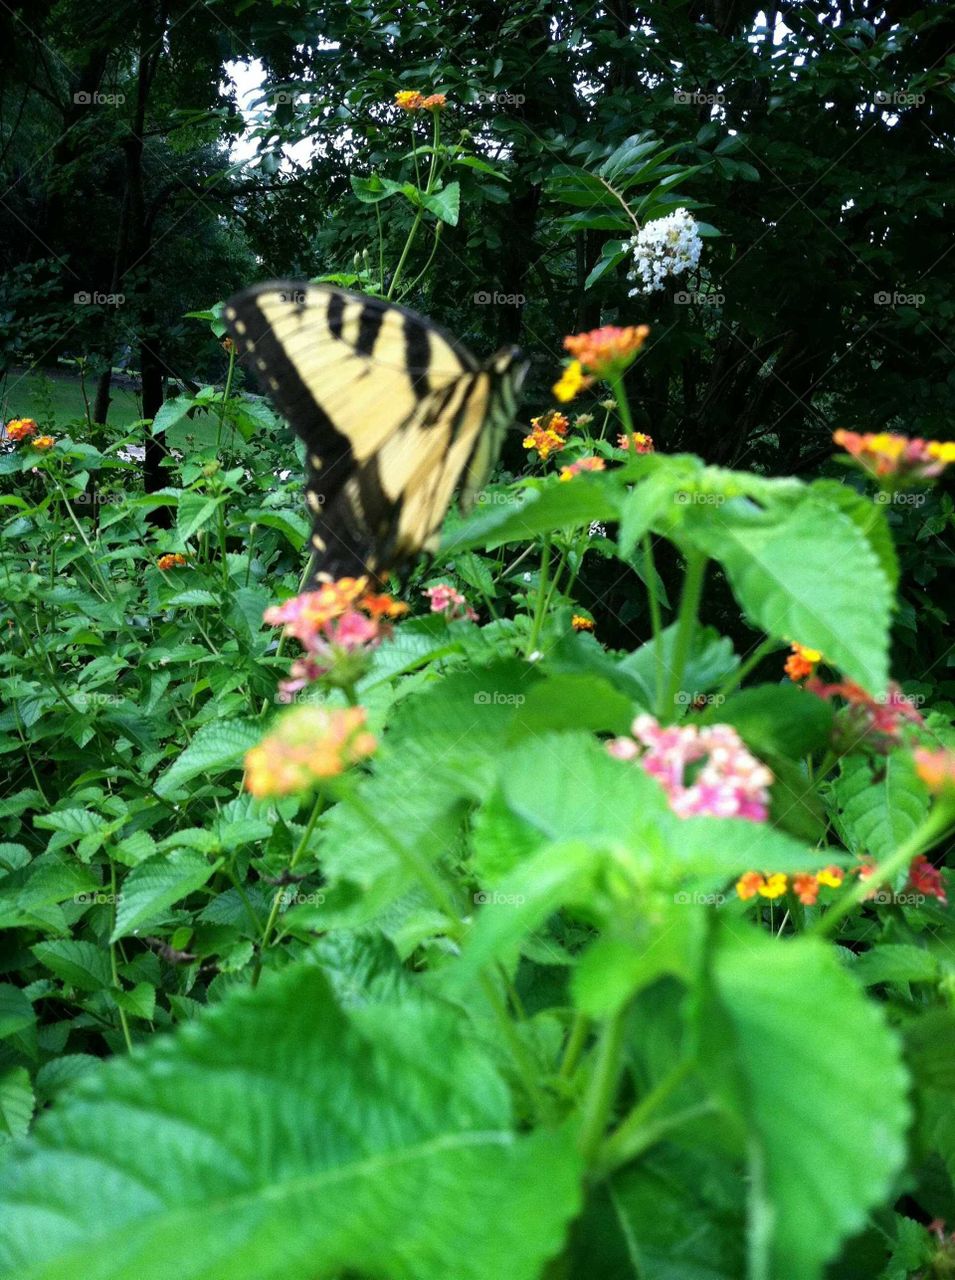 Butterfly in the Butterfly Garden